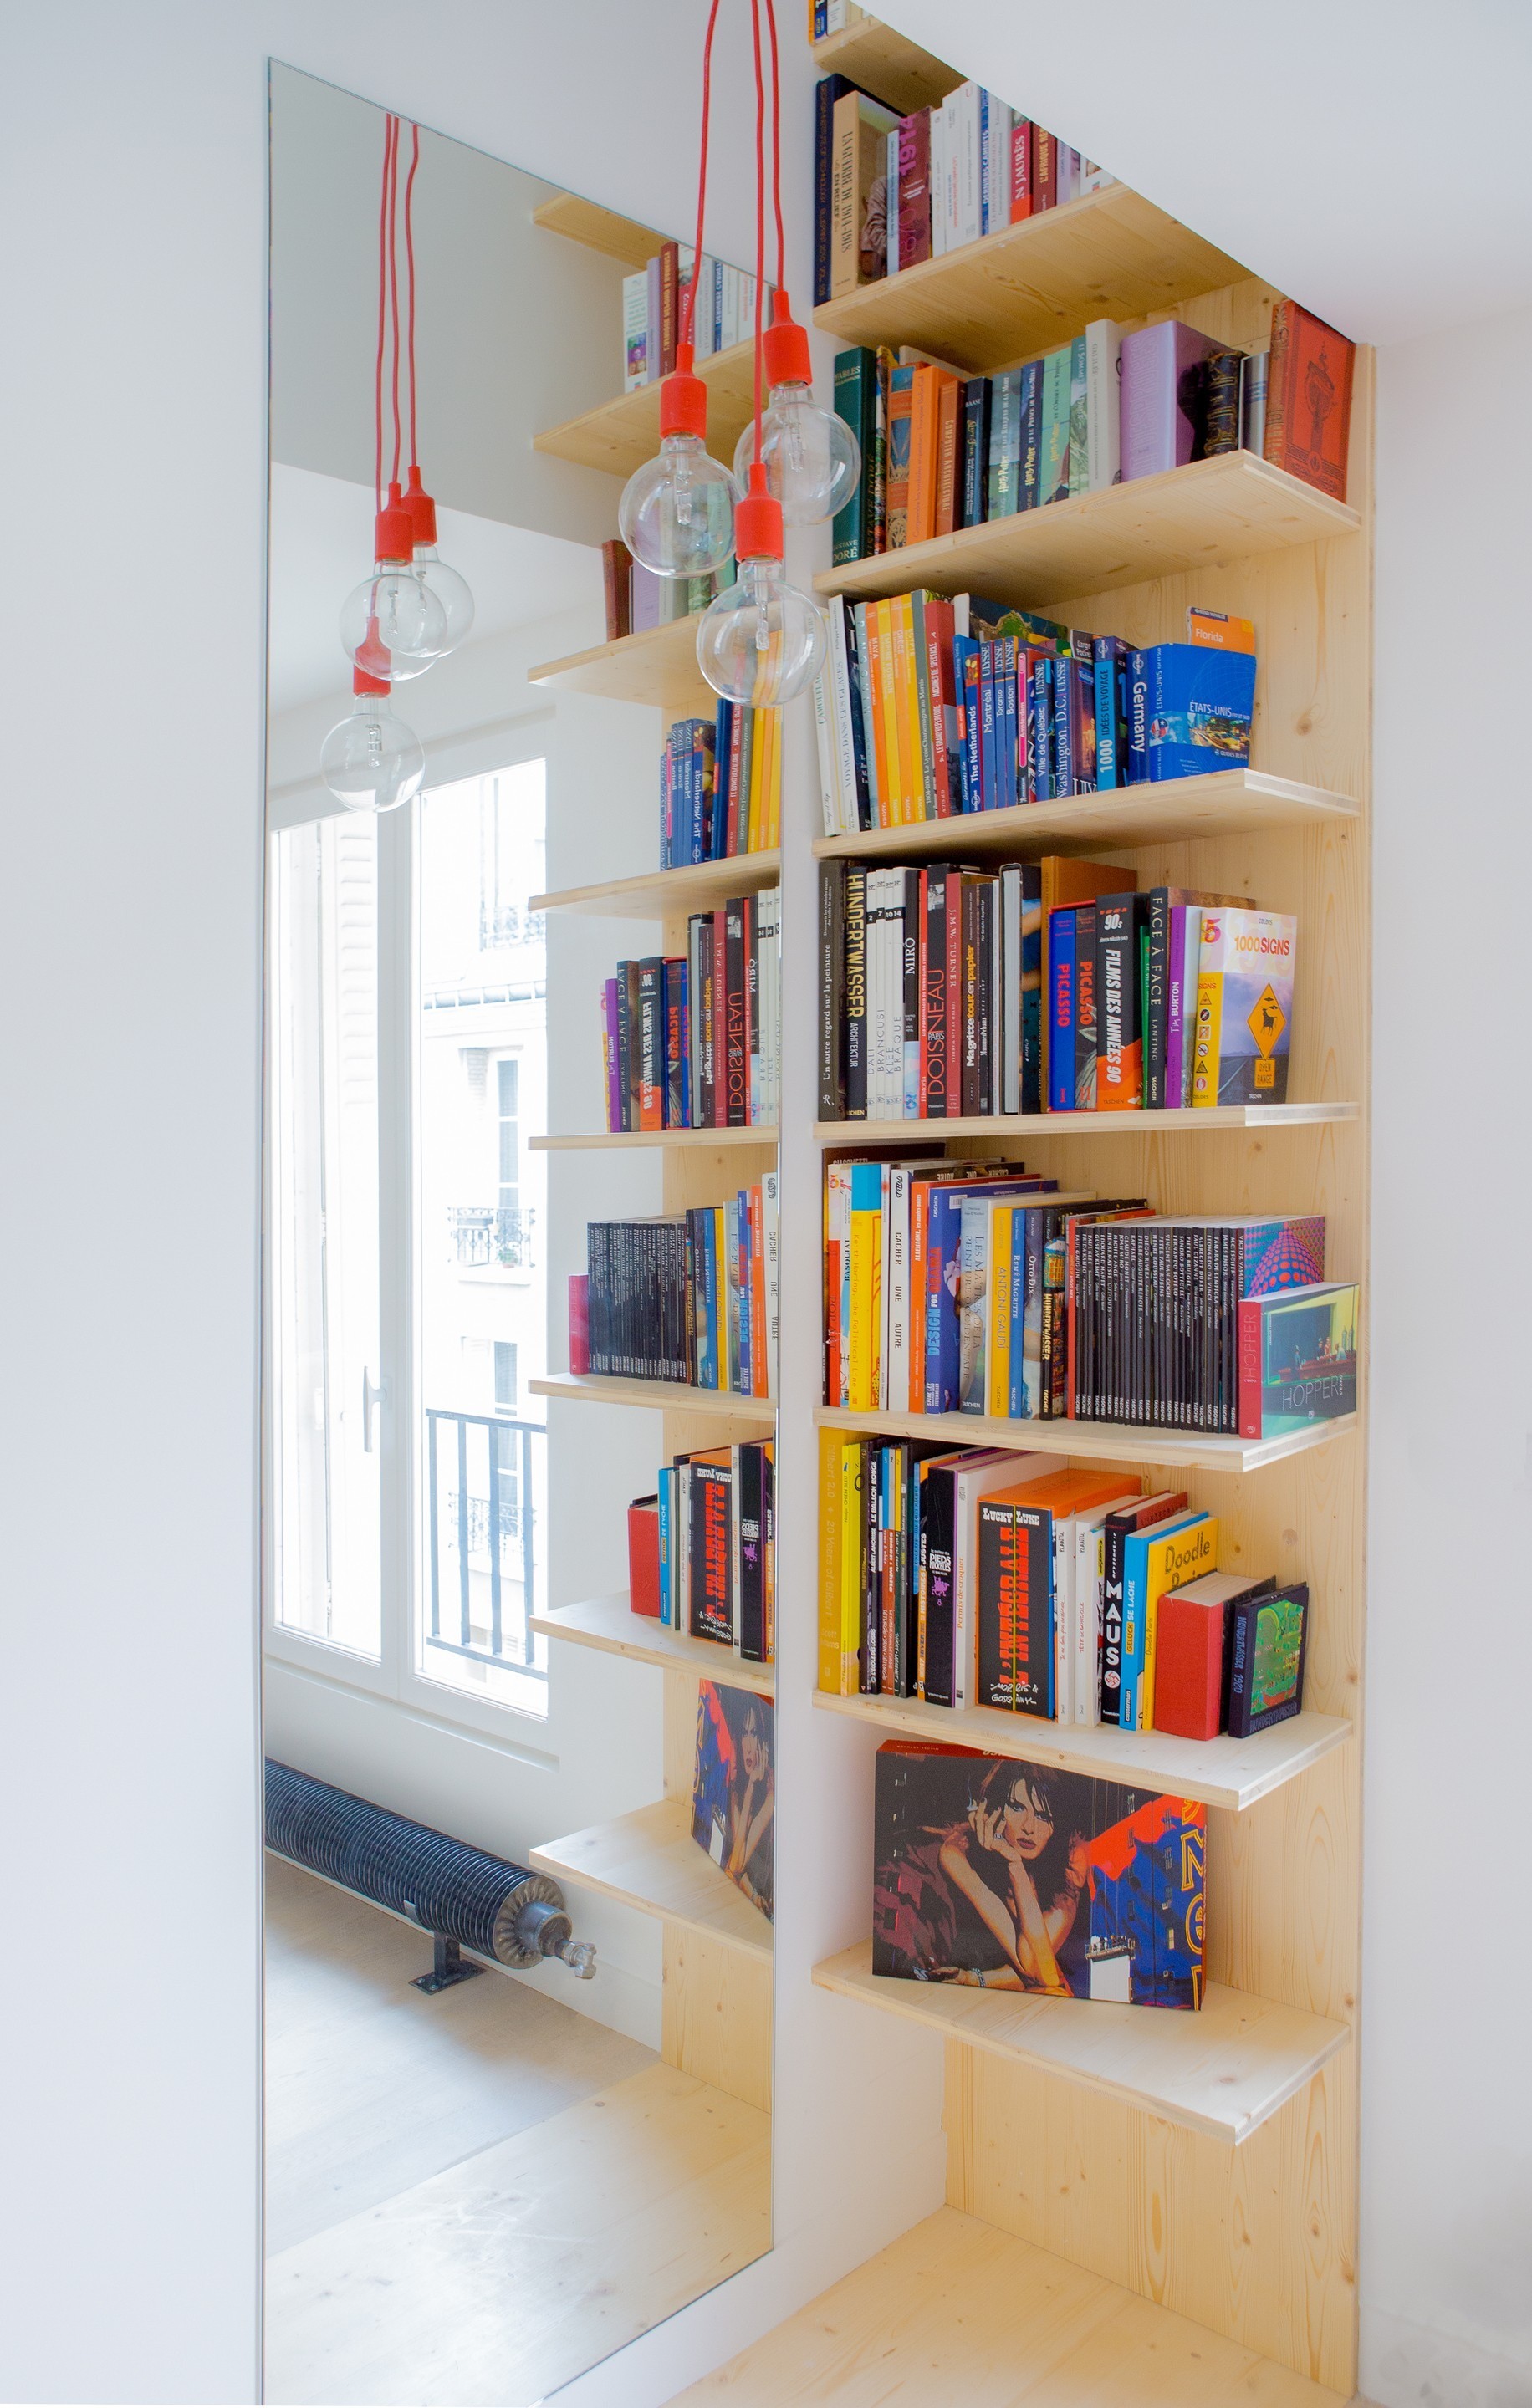 Tận dụng góc phòng để bố trí kệ sách mở nhiều tầng, những cuốn sách vừa thú vị vừa nhiều màu sắc cũng góp phần làm cho căn hộ trở nên thu hút.